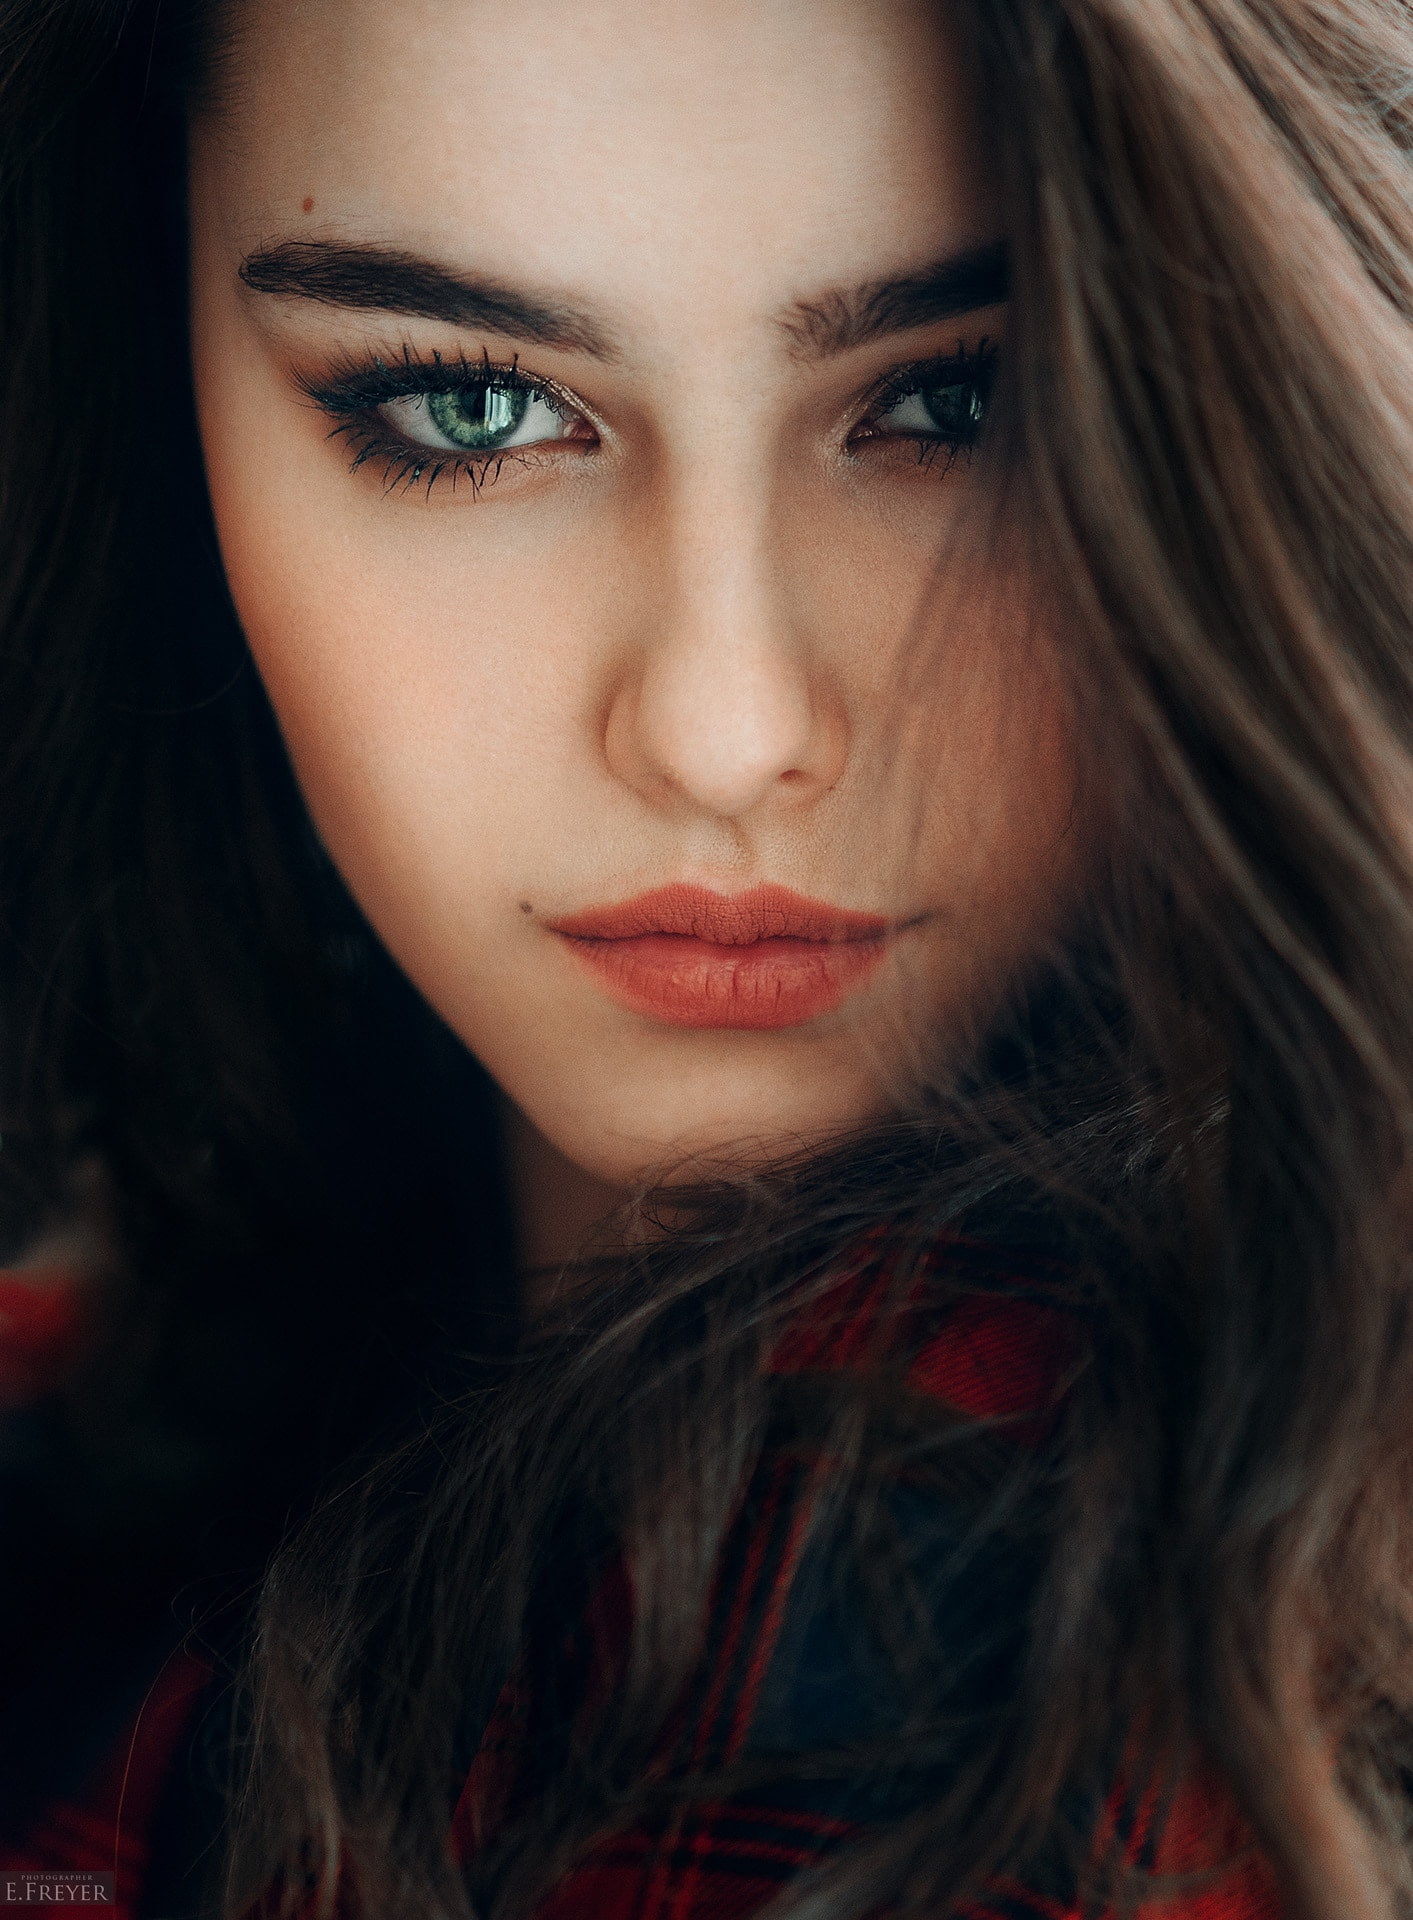 Free Download Hd Wallpaper Evgeny Freyer Women Model Portrait Face 500px Beauty